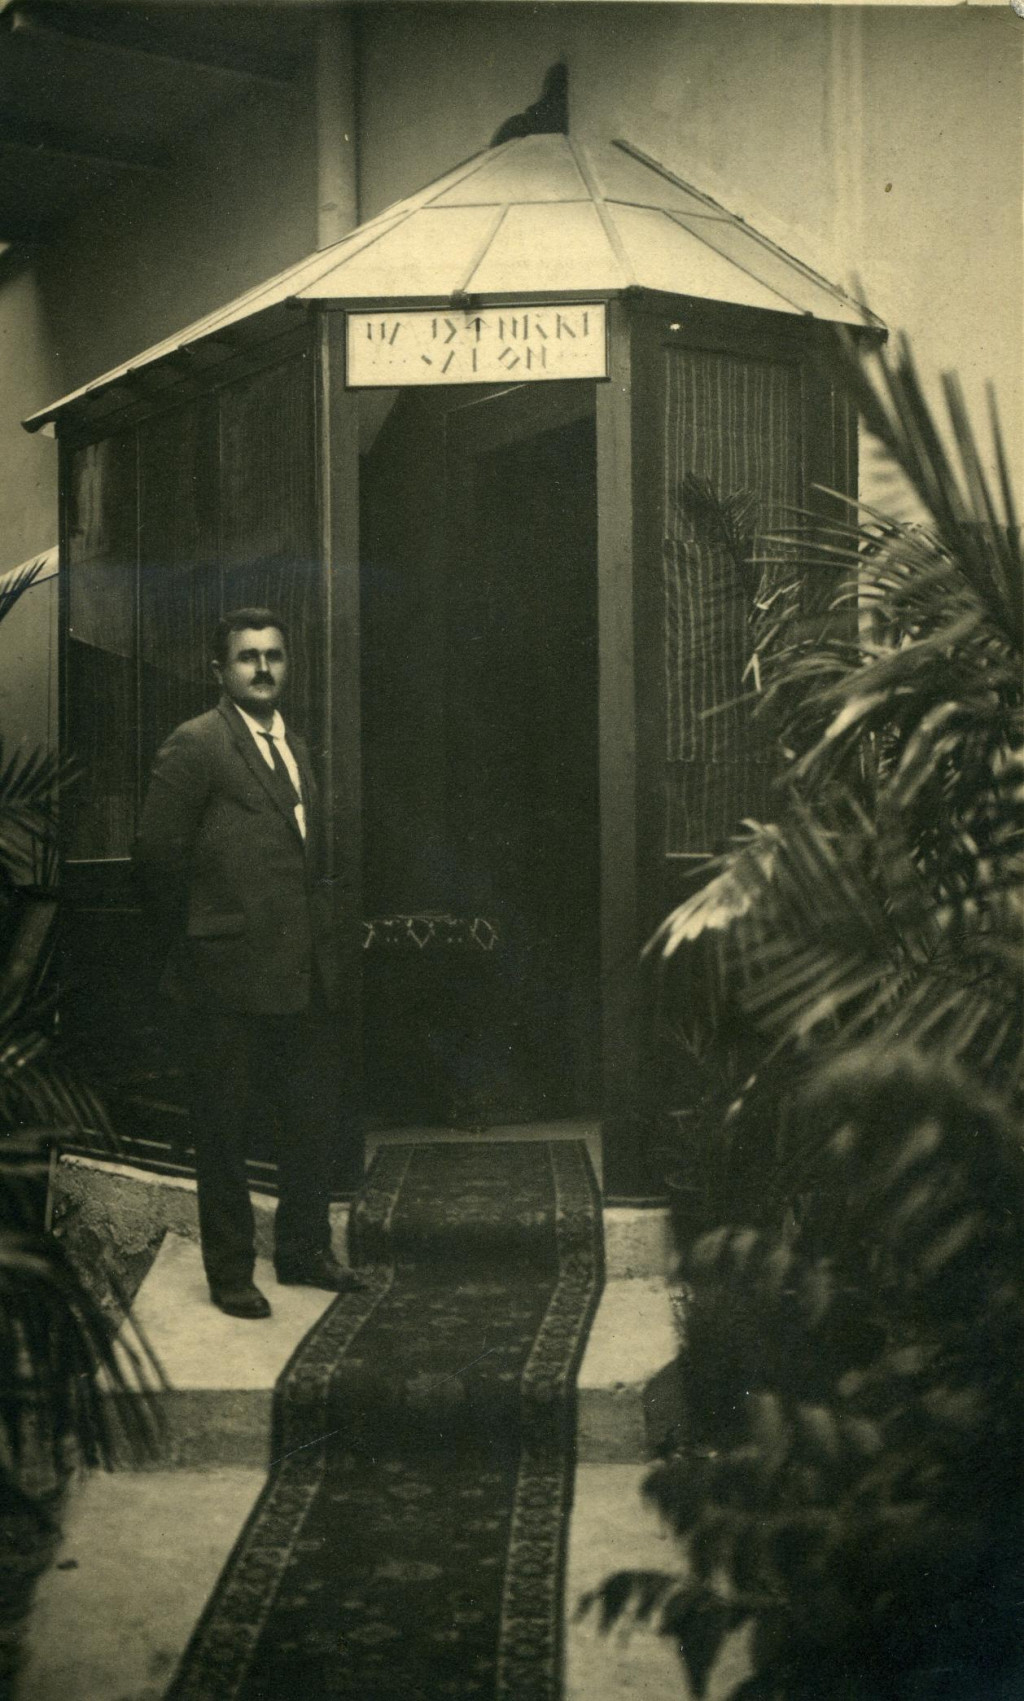 &lt;p&gt;Ivan Galić snimljen 31. svibnja 1924. na dan otvaranja svog salona&lt;/p&gt;